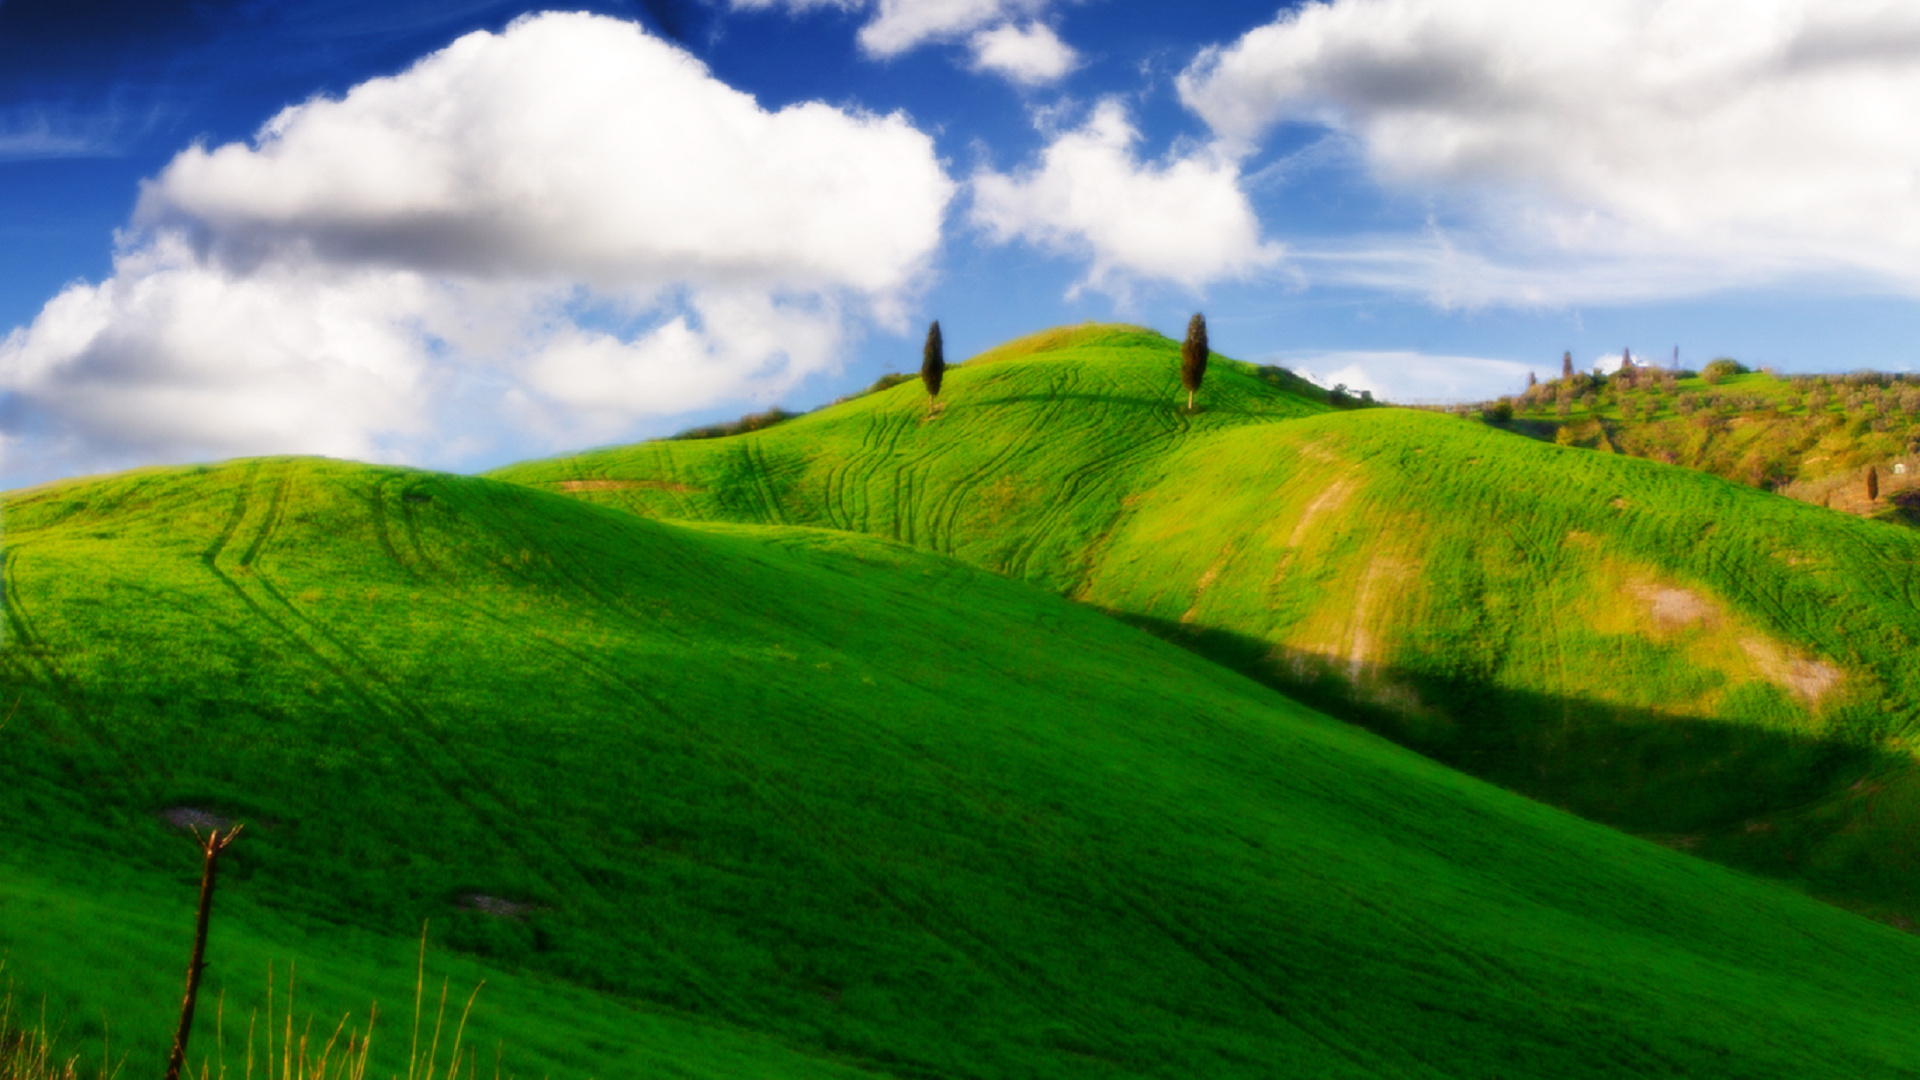 Яркий холм. Green Hills зеленые холмы. Зеленые холмы 212525. Холмистая равнина Тоскана. Green Hills Чехия.